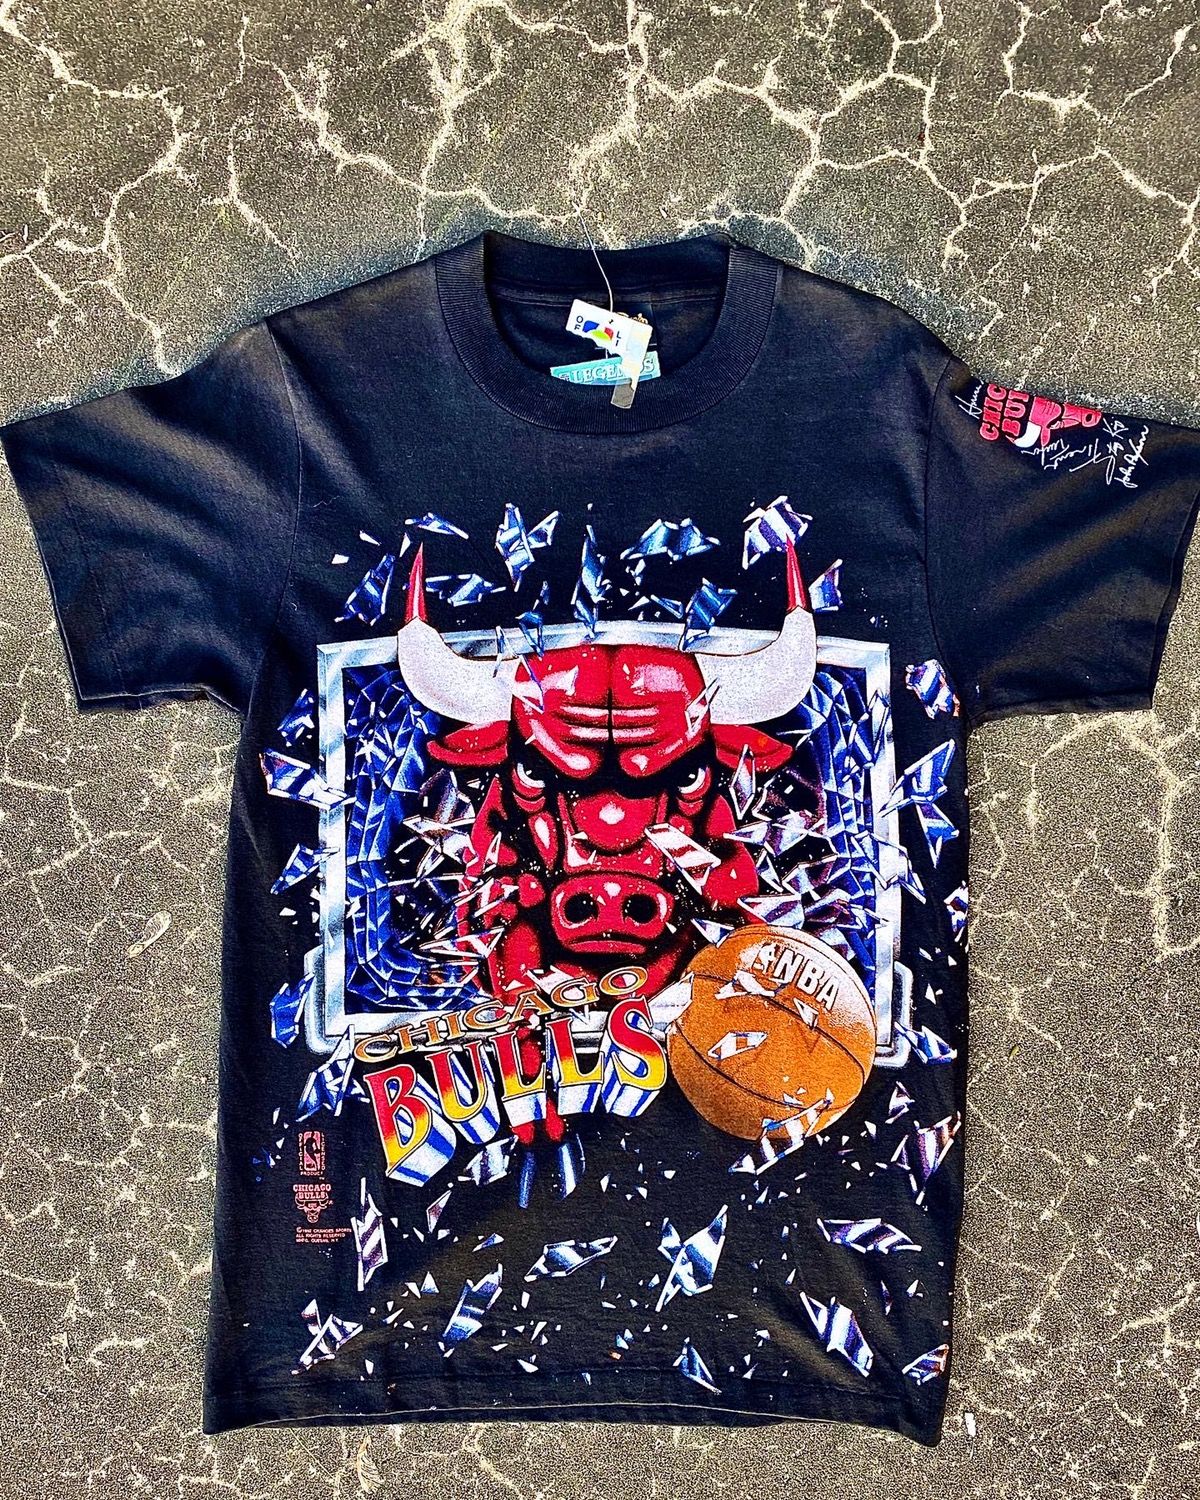 Changes Vintage shattered backboard Chicago Bulls t-shirt | Grailed